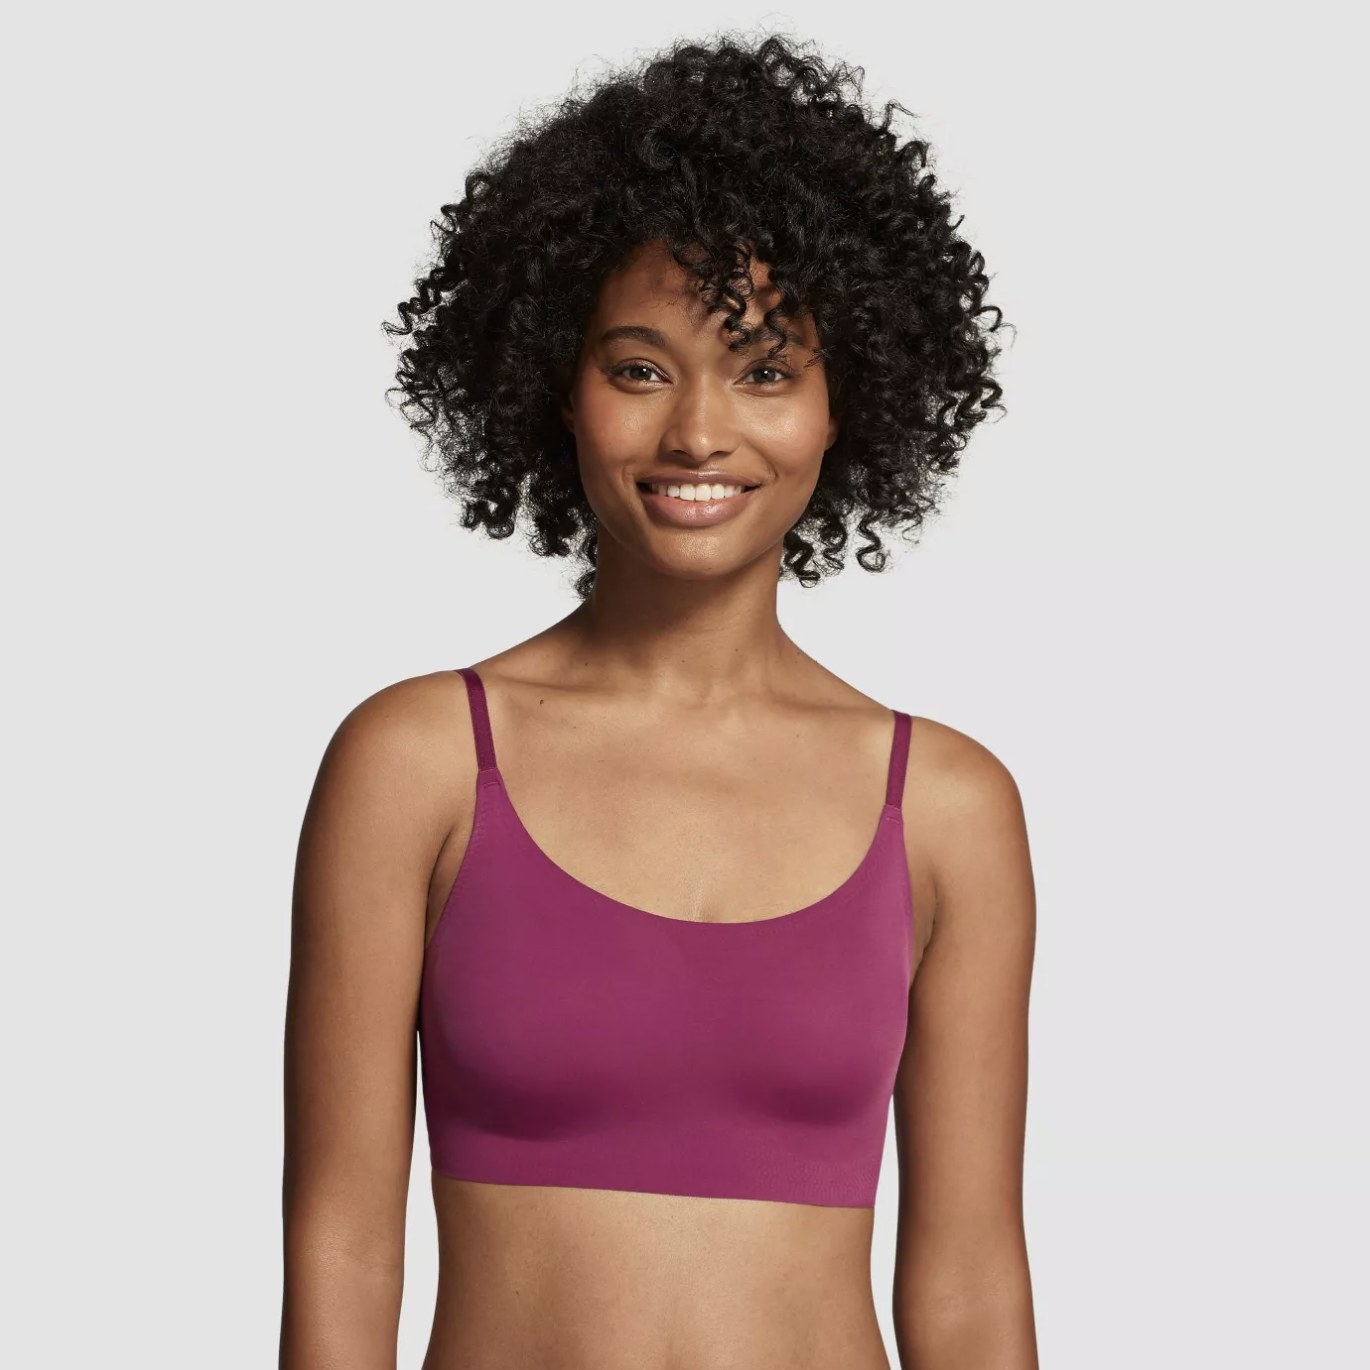 Model is wearing a purple scoop-neck bra